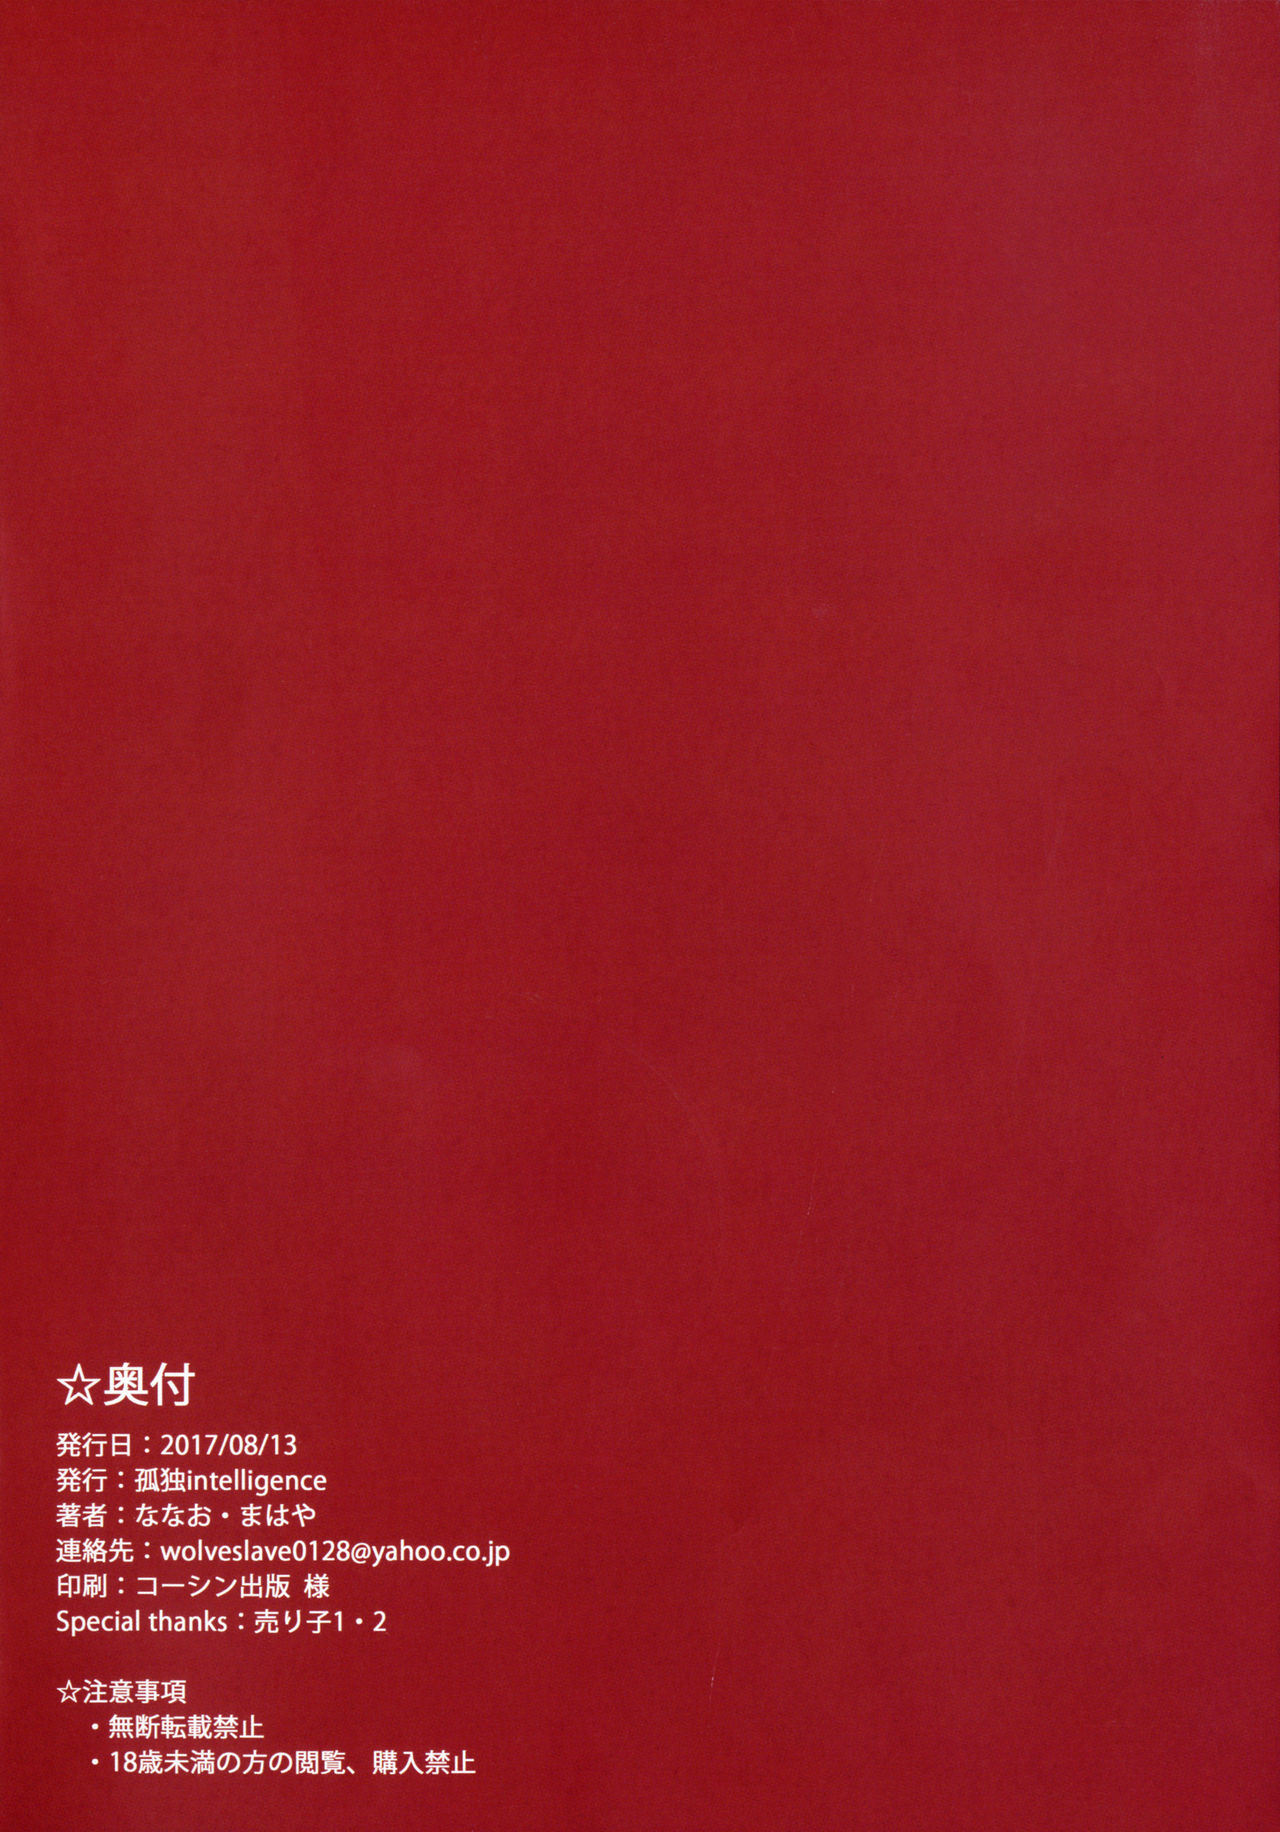 (C92) [孤独intelligence (ななお)] THE BOOK OF RIKO (ラブライブ! サンシャイン!!) [中国翻訳]